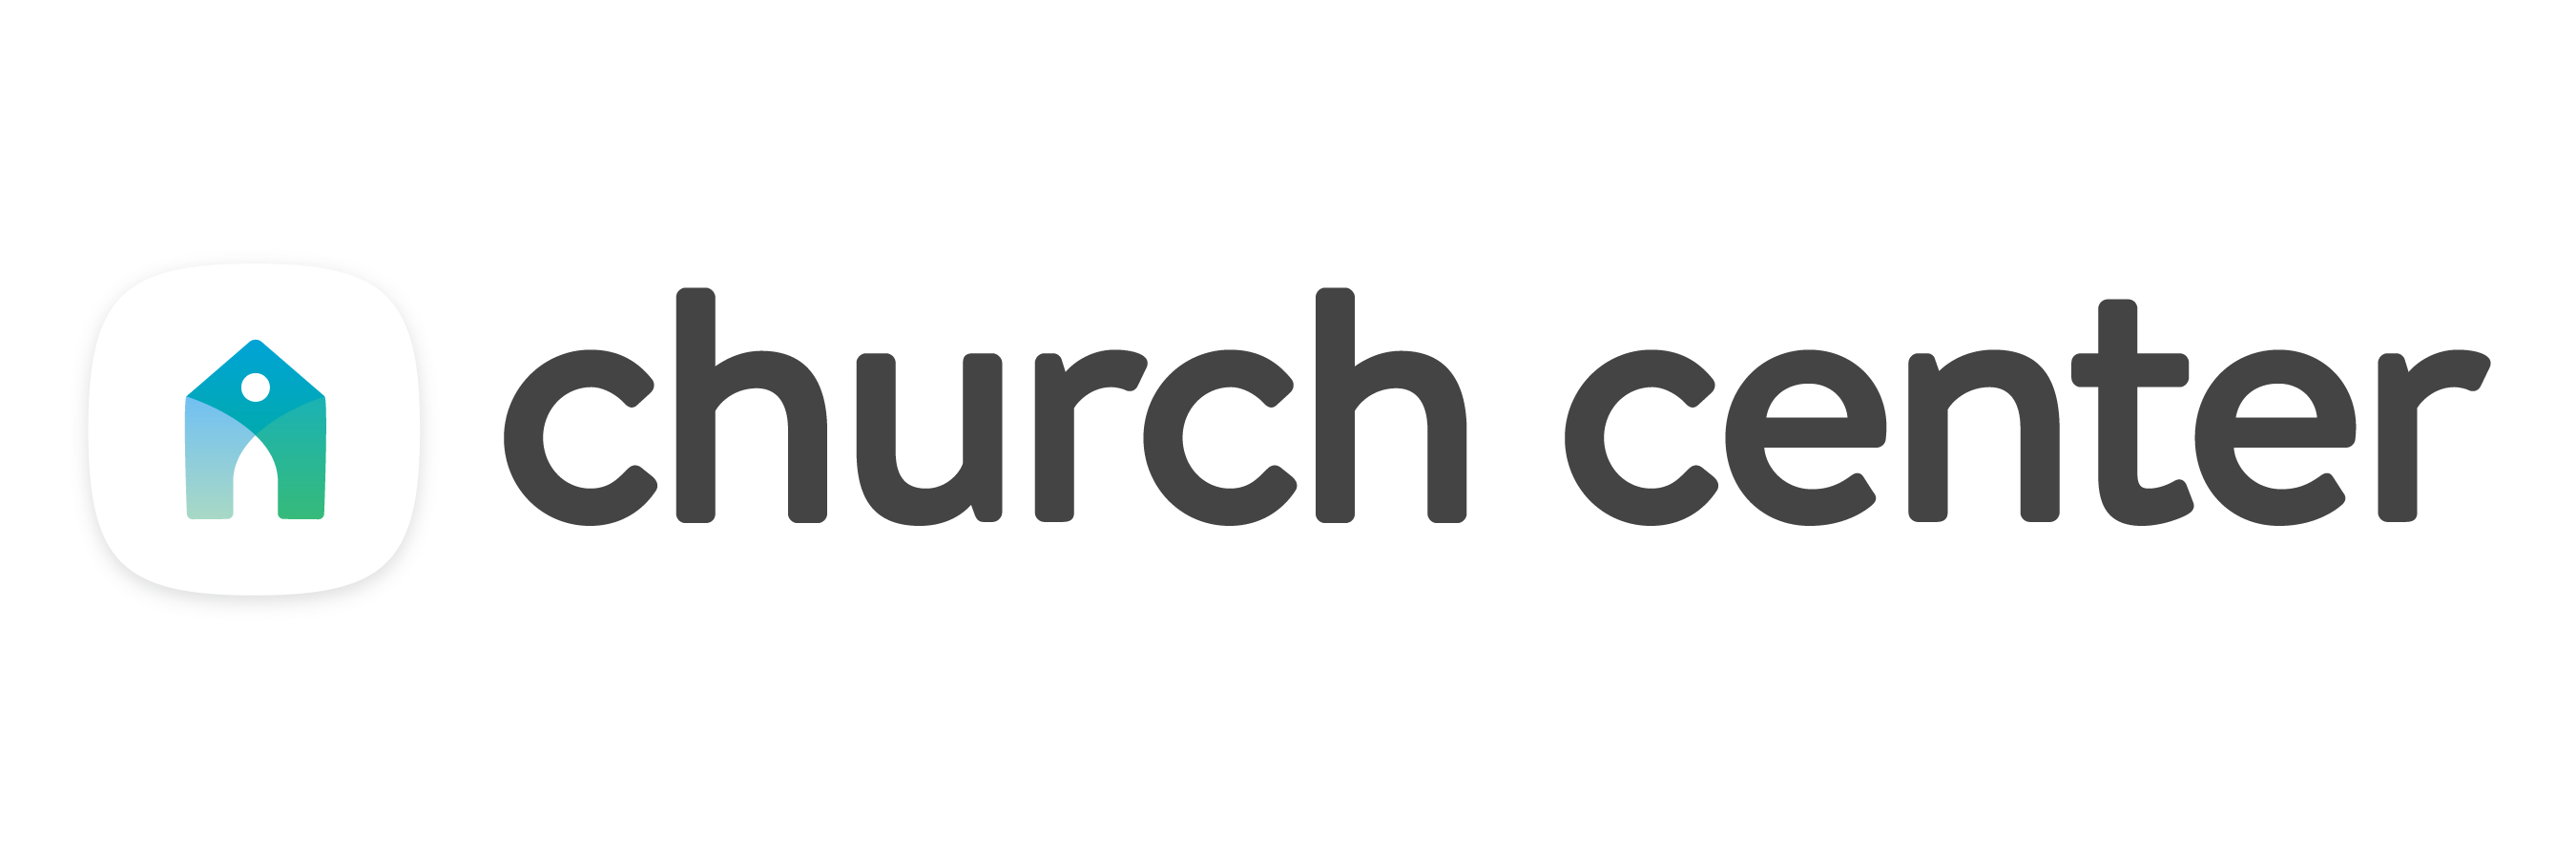 Church_Center_App_-_use_on_light_BG.png